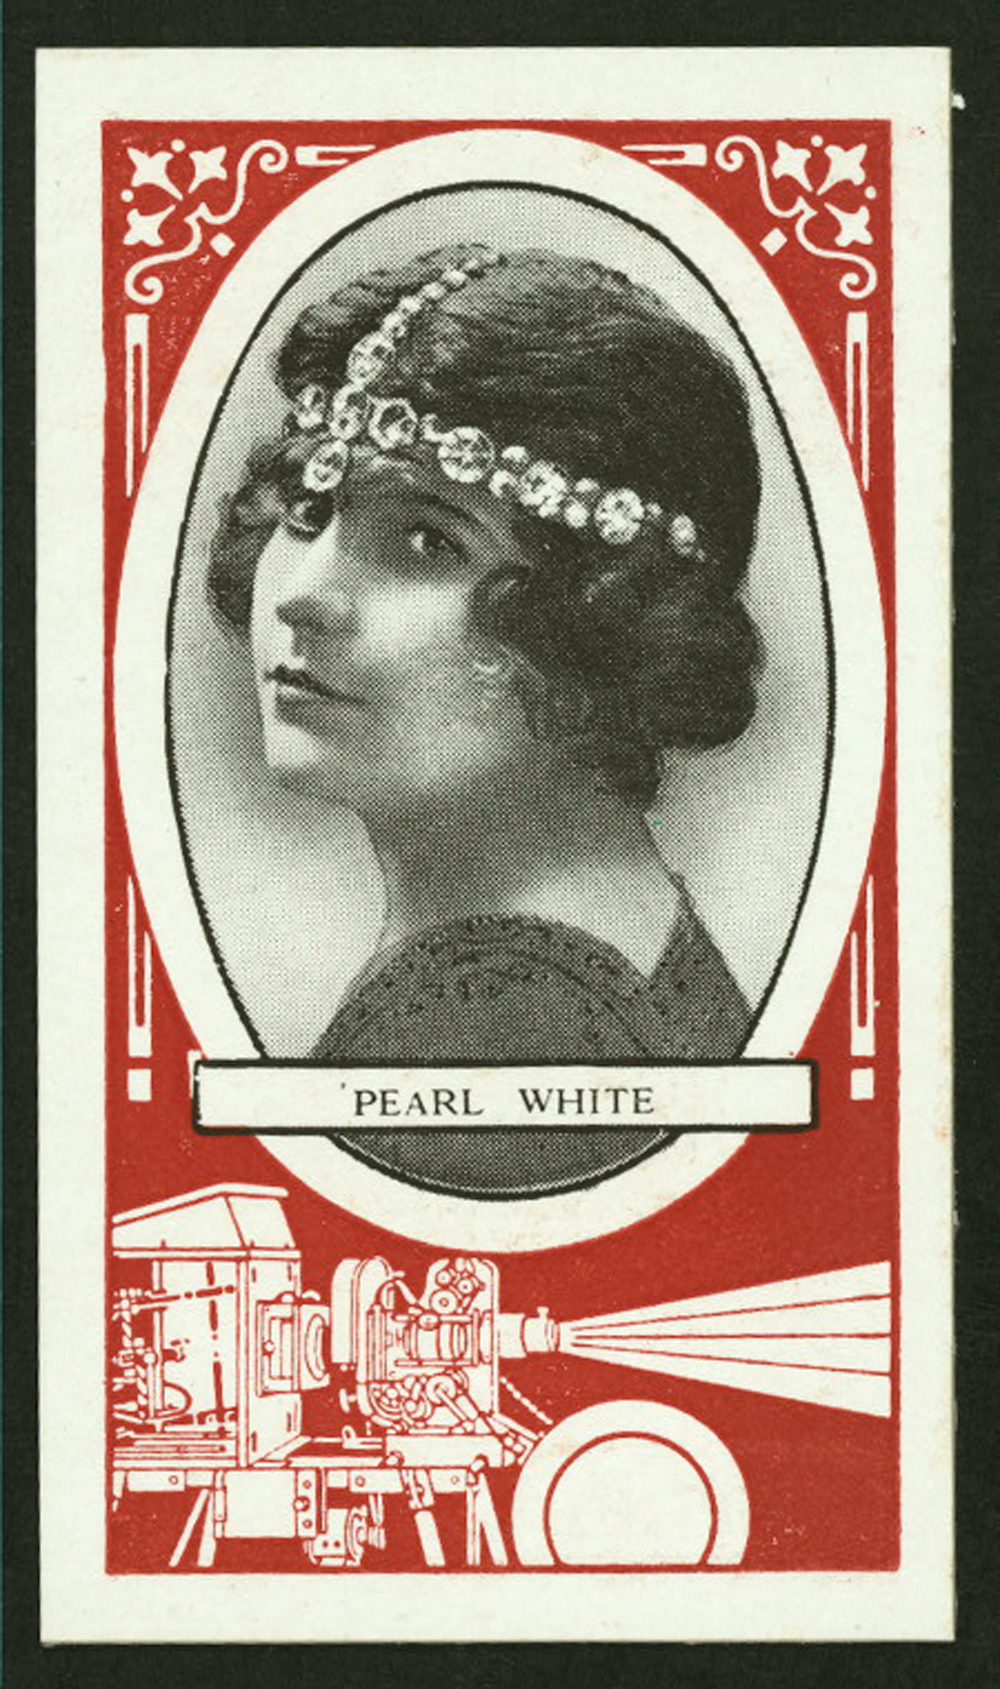 Pearl White Cigarette Card